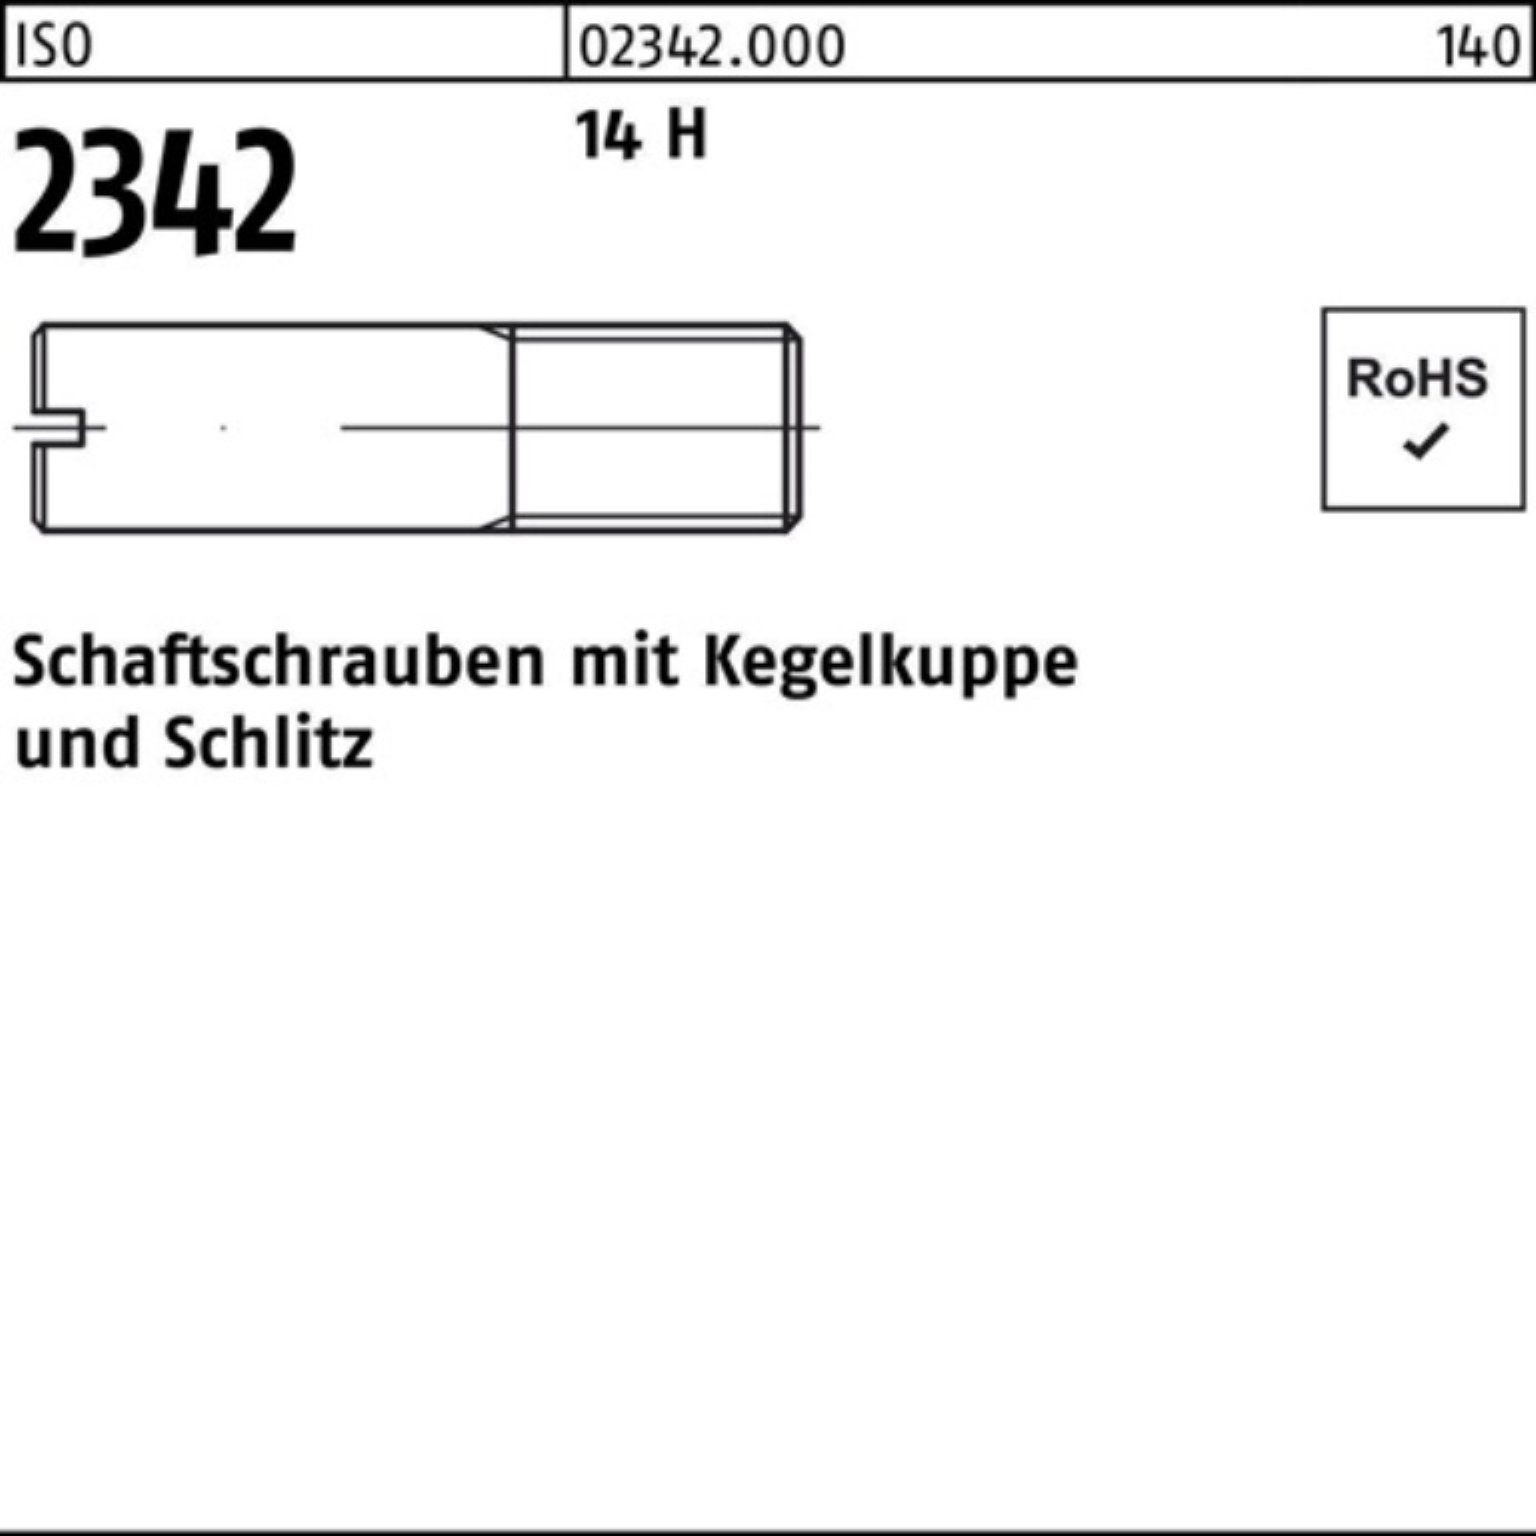 100er Reyher M12x Schaftschraube Pack Kegelkuppe/Schlitz 50 20 ISO 14 Schraube H 2342